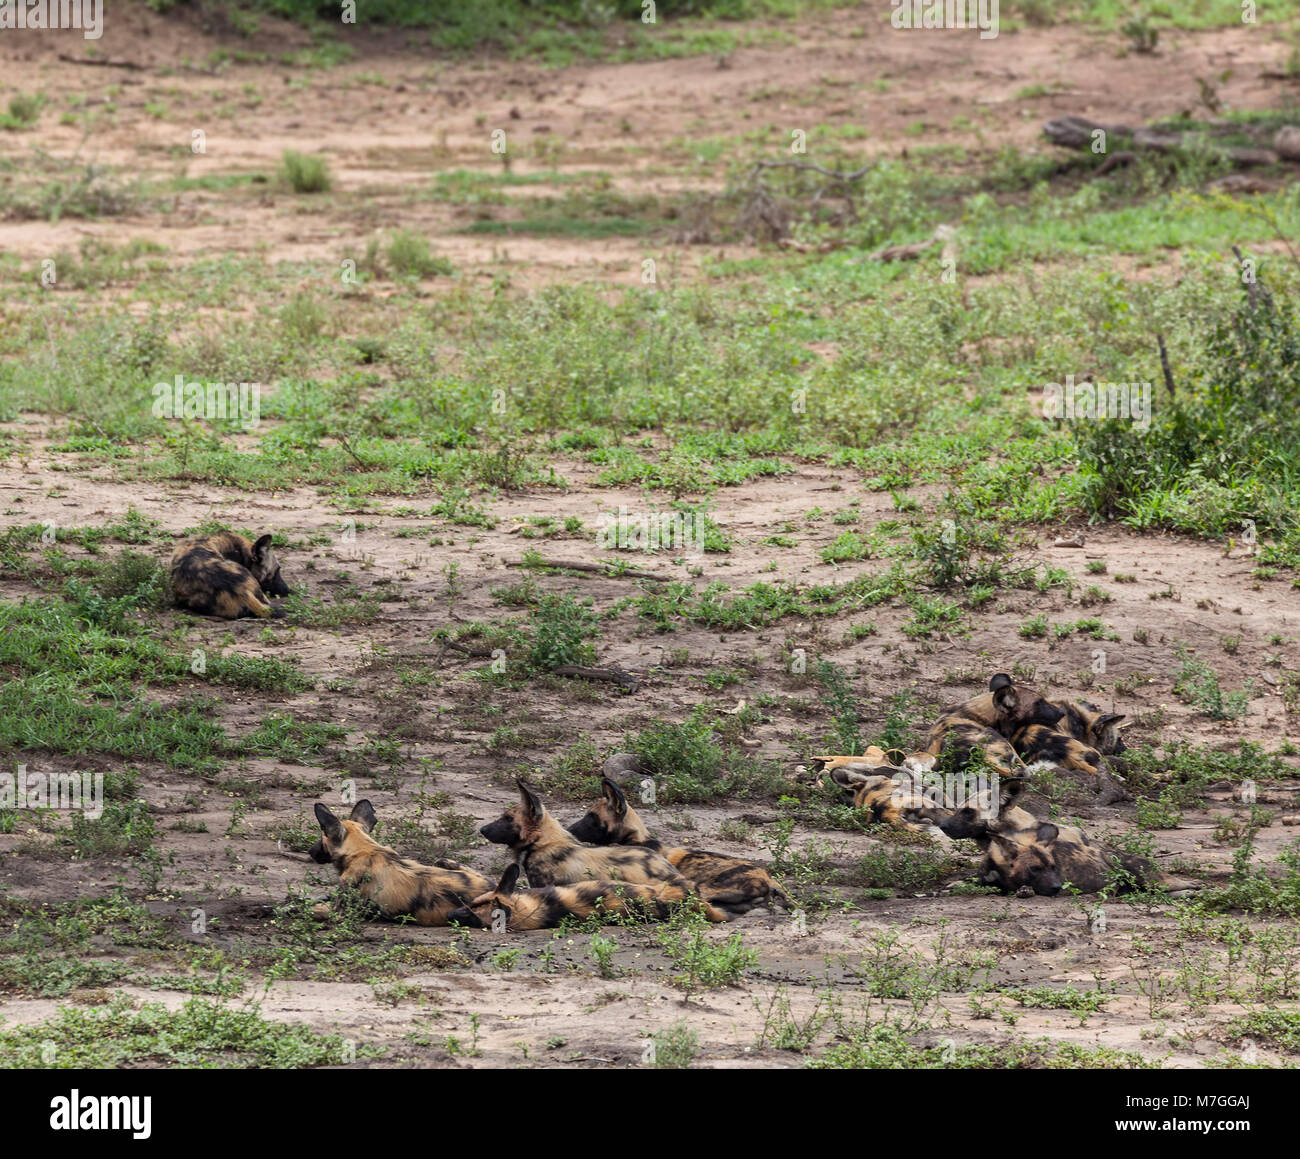 Dix membres d'une meute de chiens sauvages d'Afrique, Lycaon pictus, de repos (certains l'alerte) dans l'ombre en Afrique du Sud, Kruger NP Banque D'Images